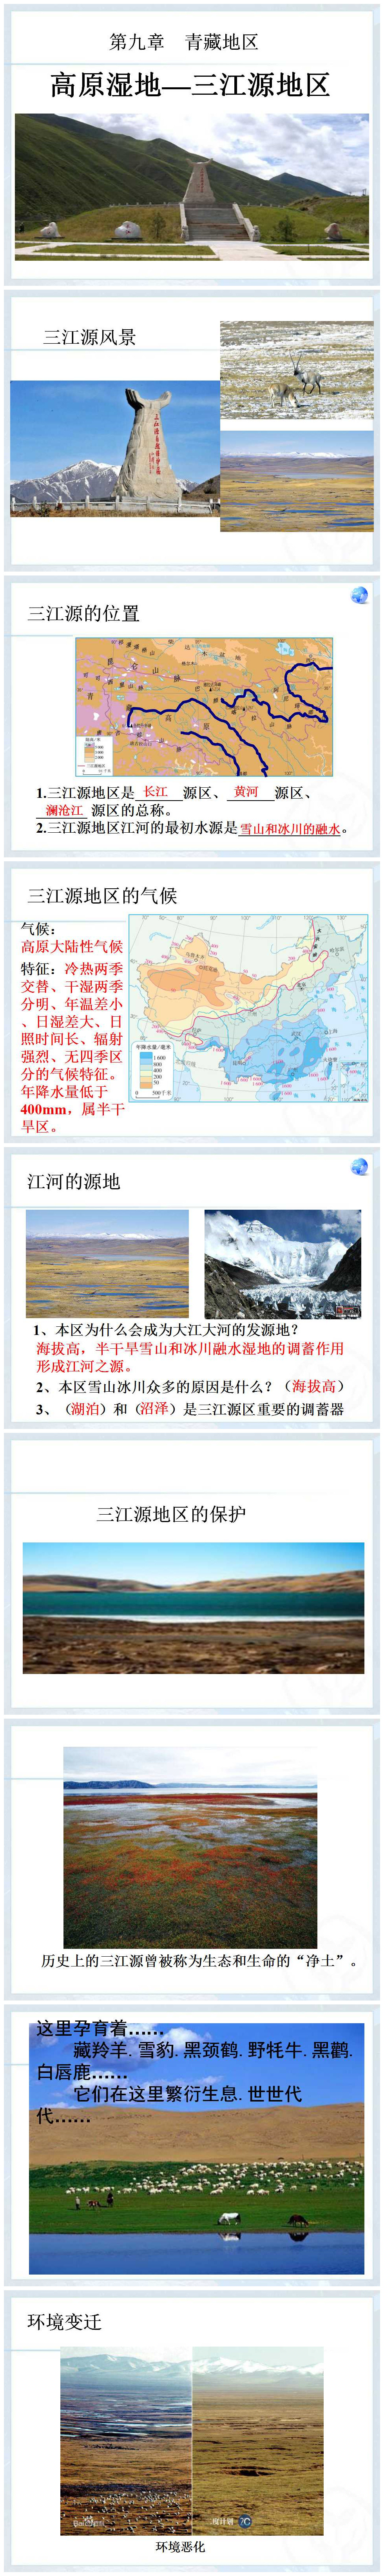 《高原湿地三江源地区》青藏地区PPT课件3PPT课件下载